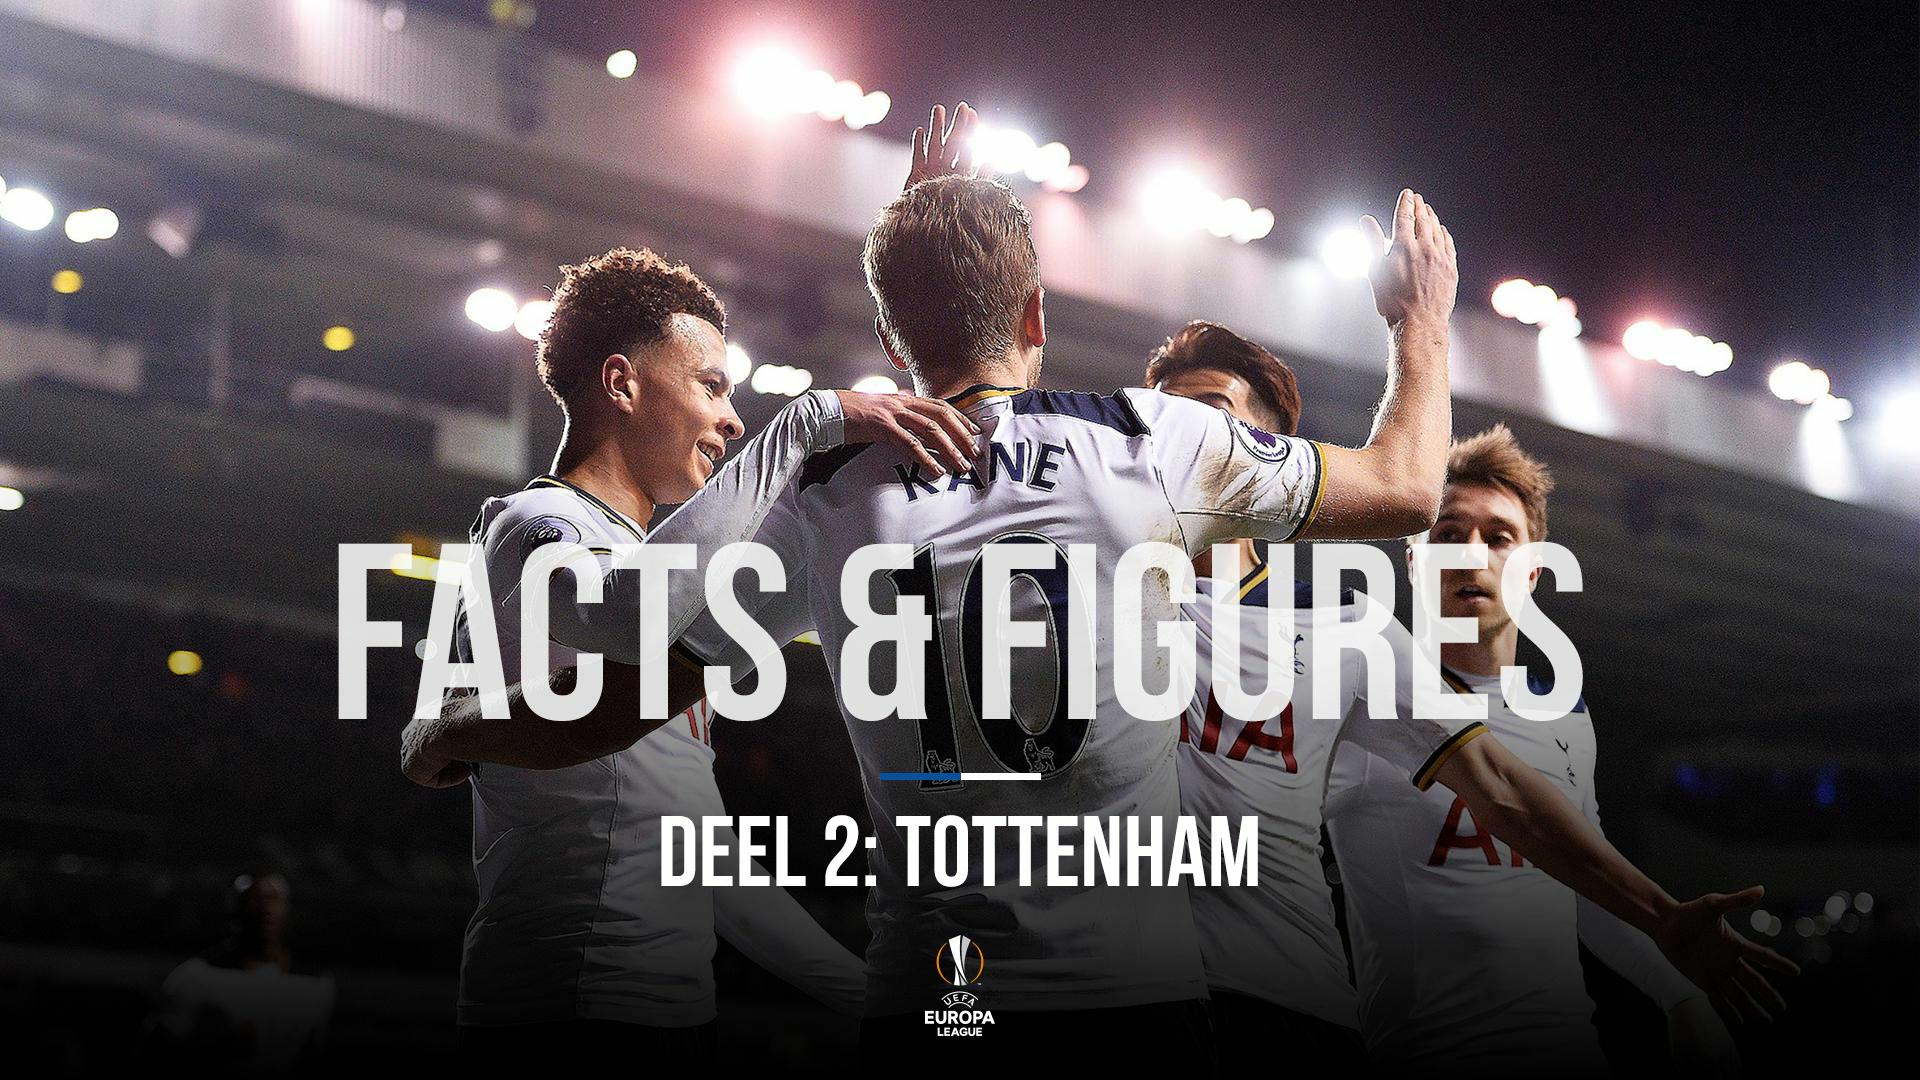 KAA Gent - Tottenham: Facts & Figures (deel 2)